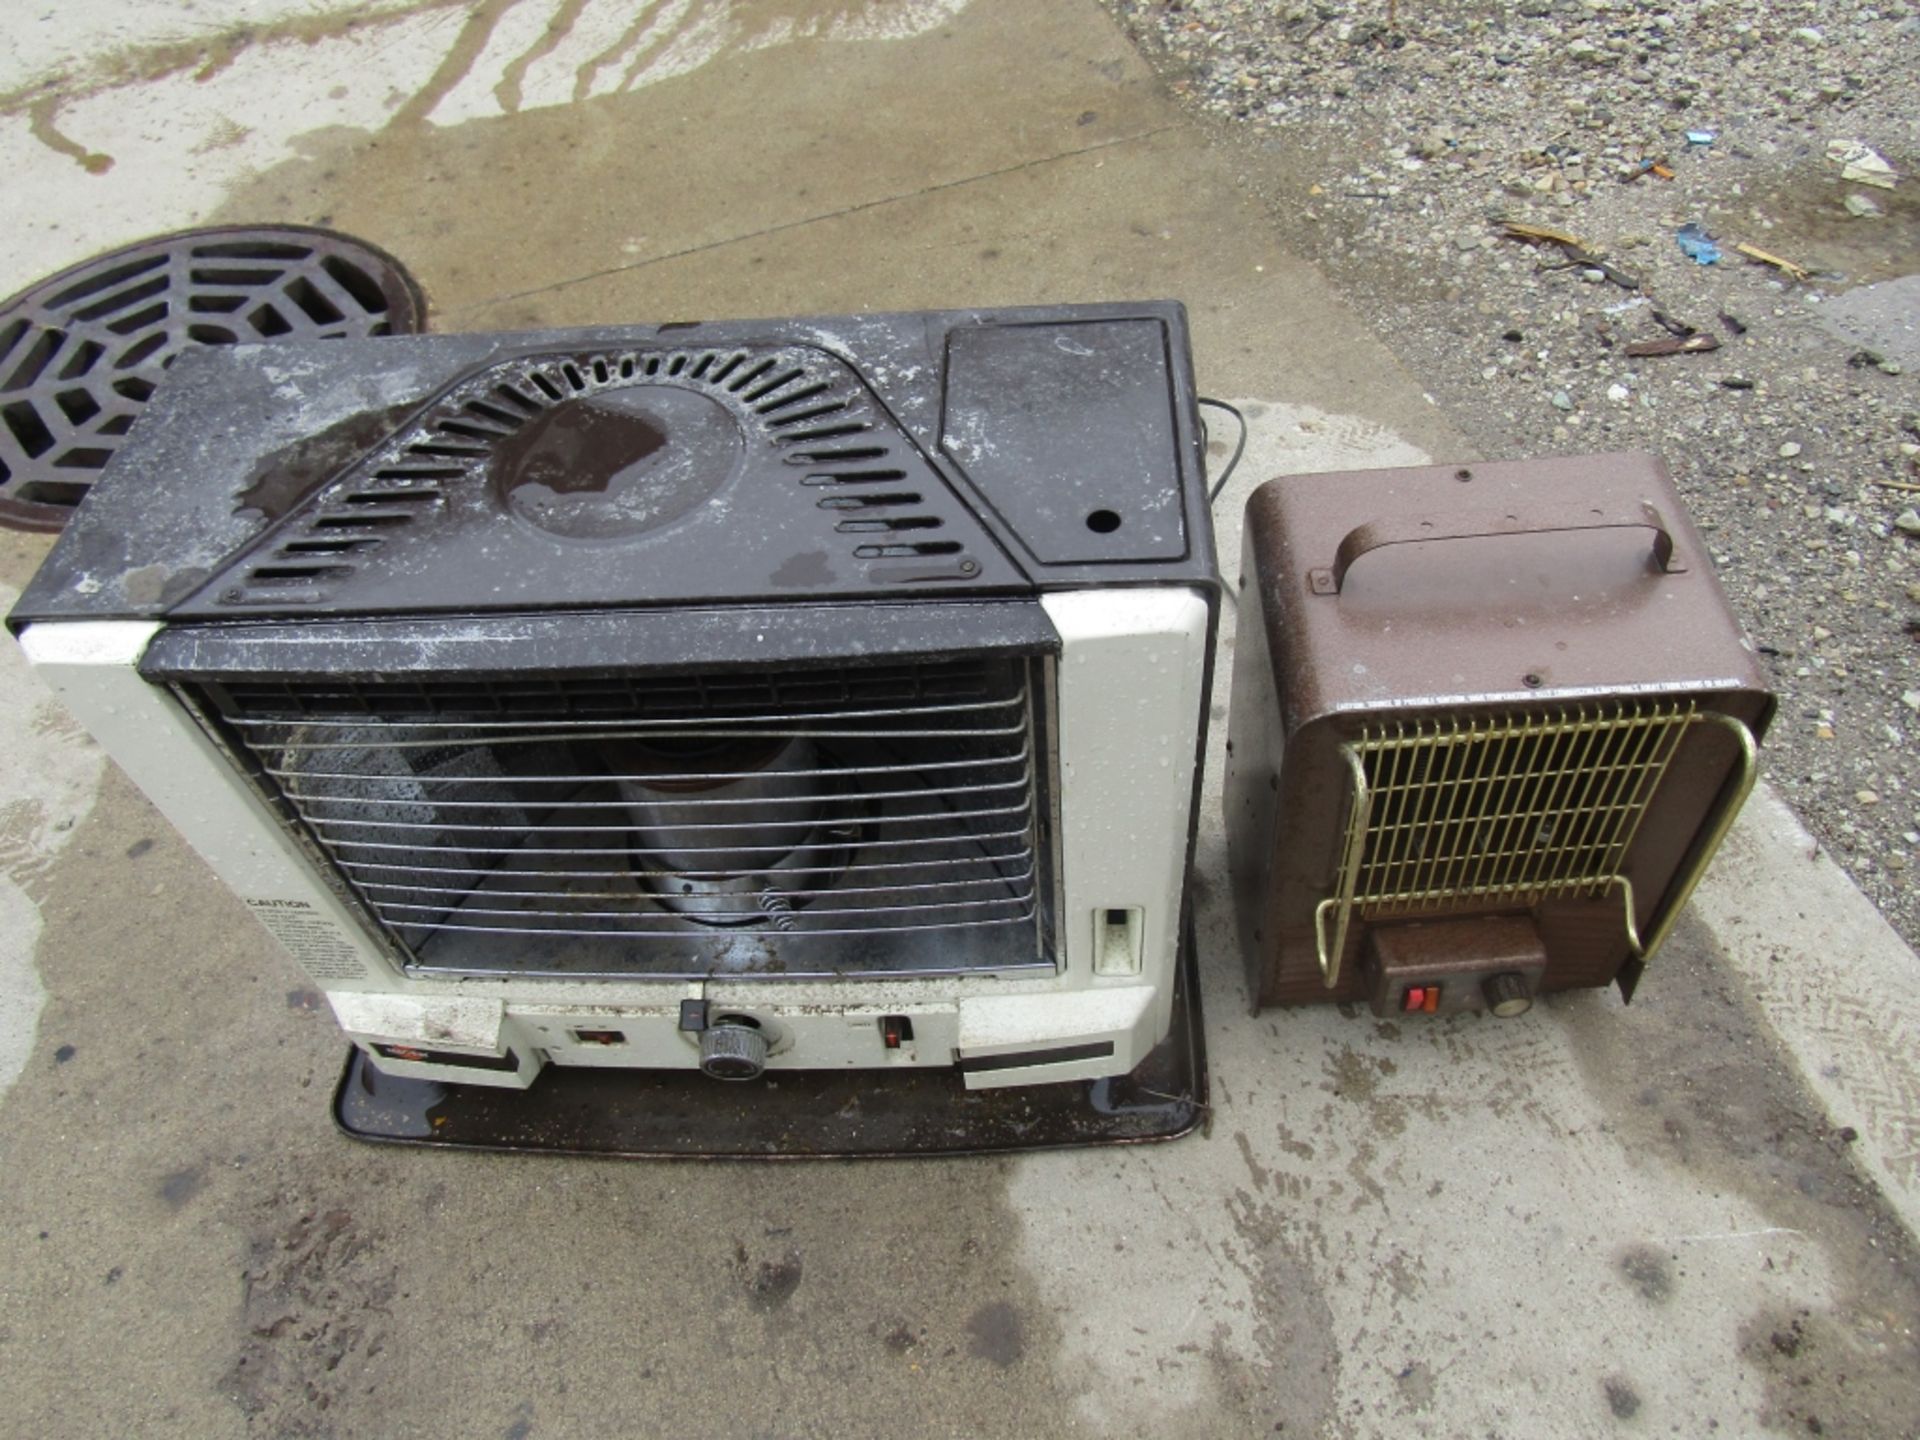 (2) Heaters, (1) Kero-Sun Heater & (1) Brown Heater